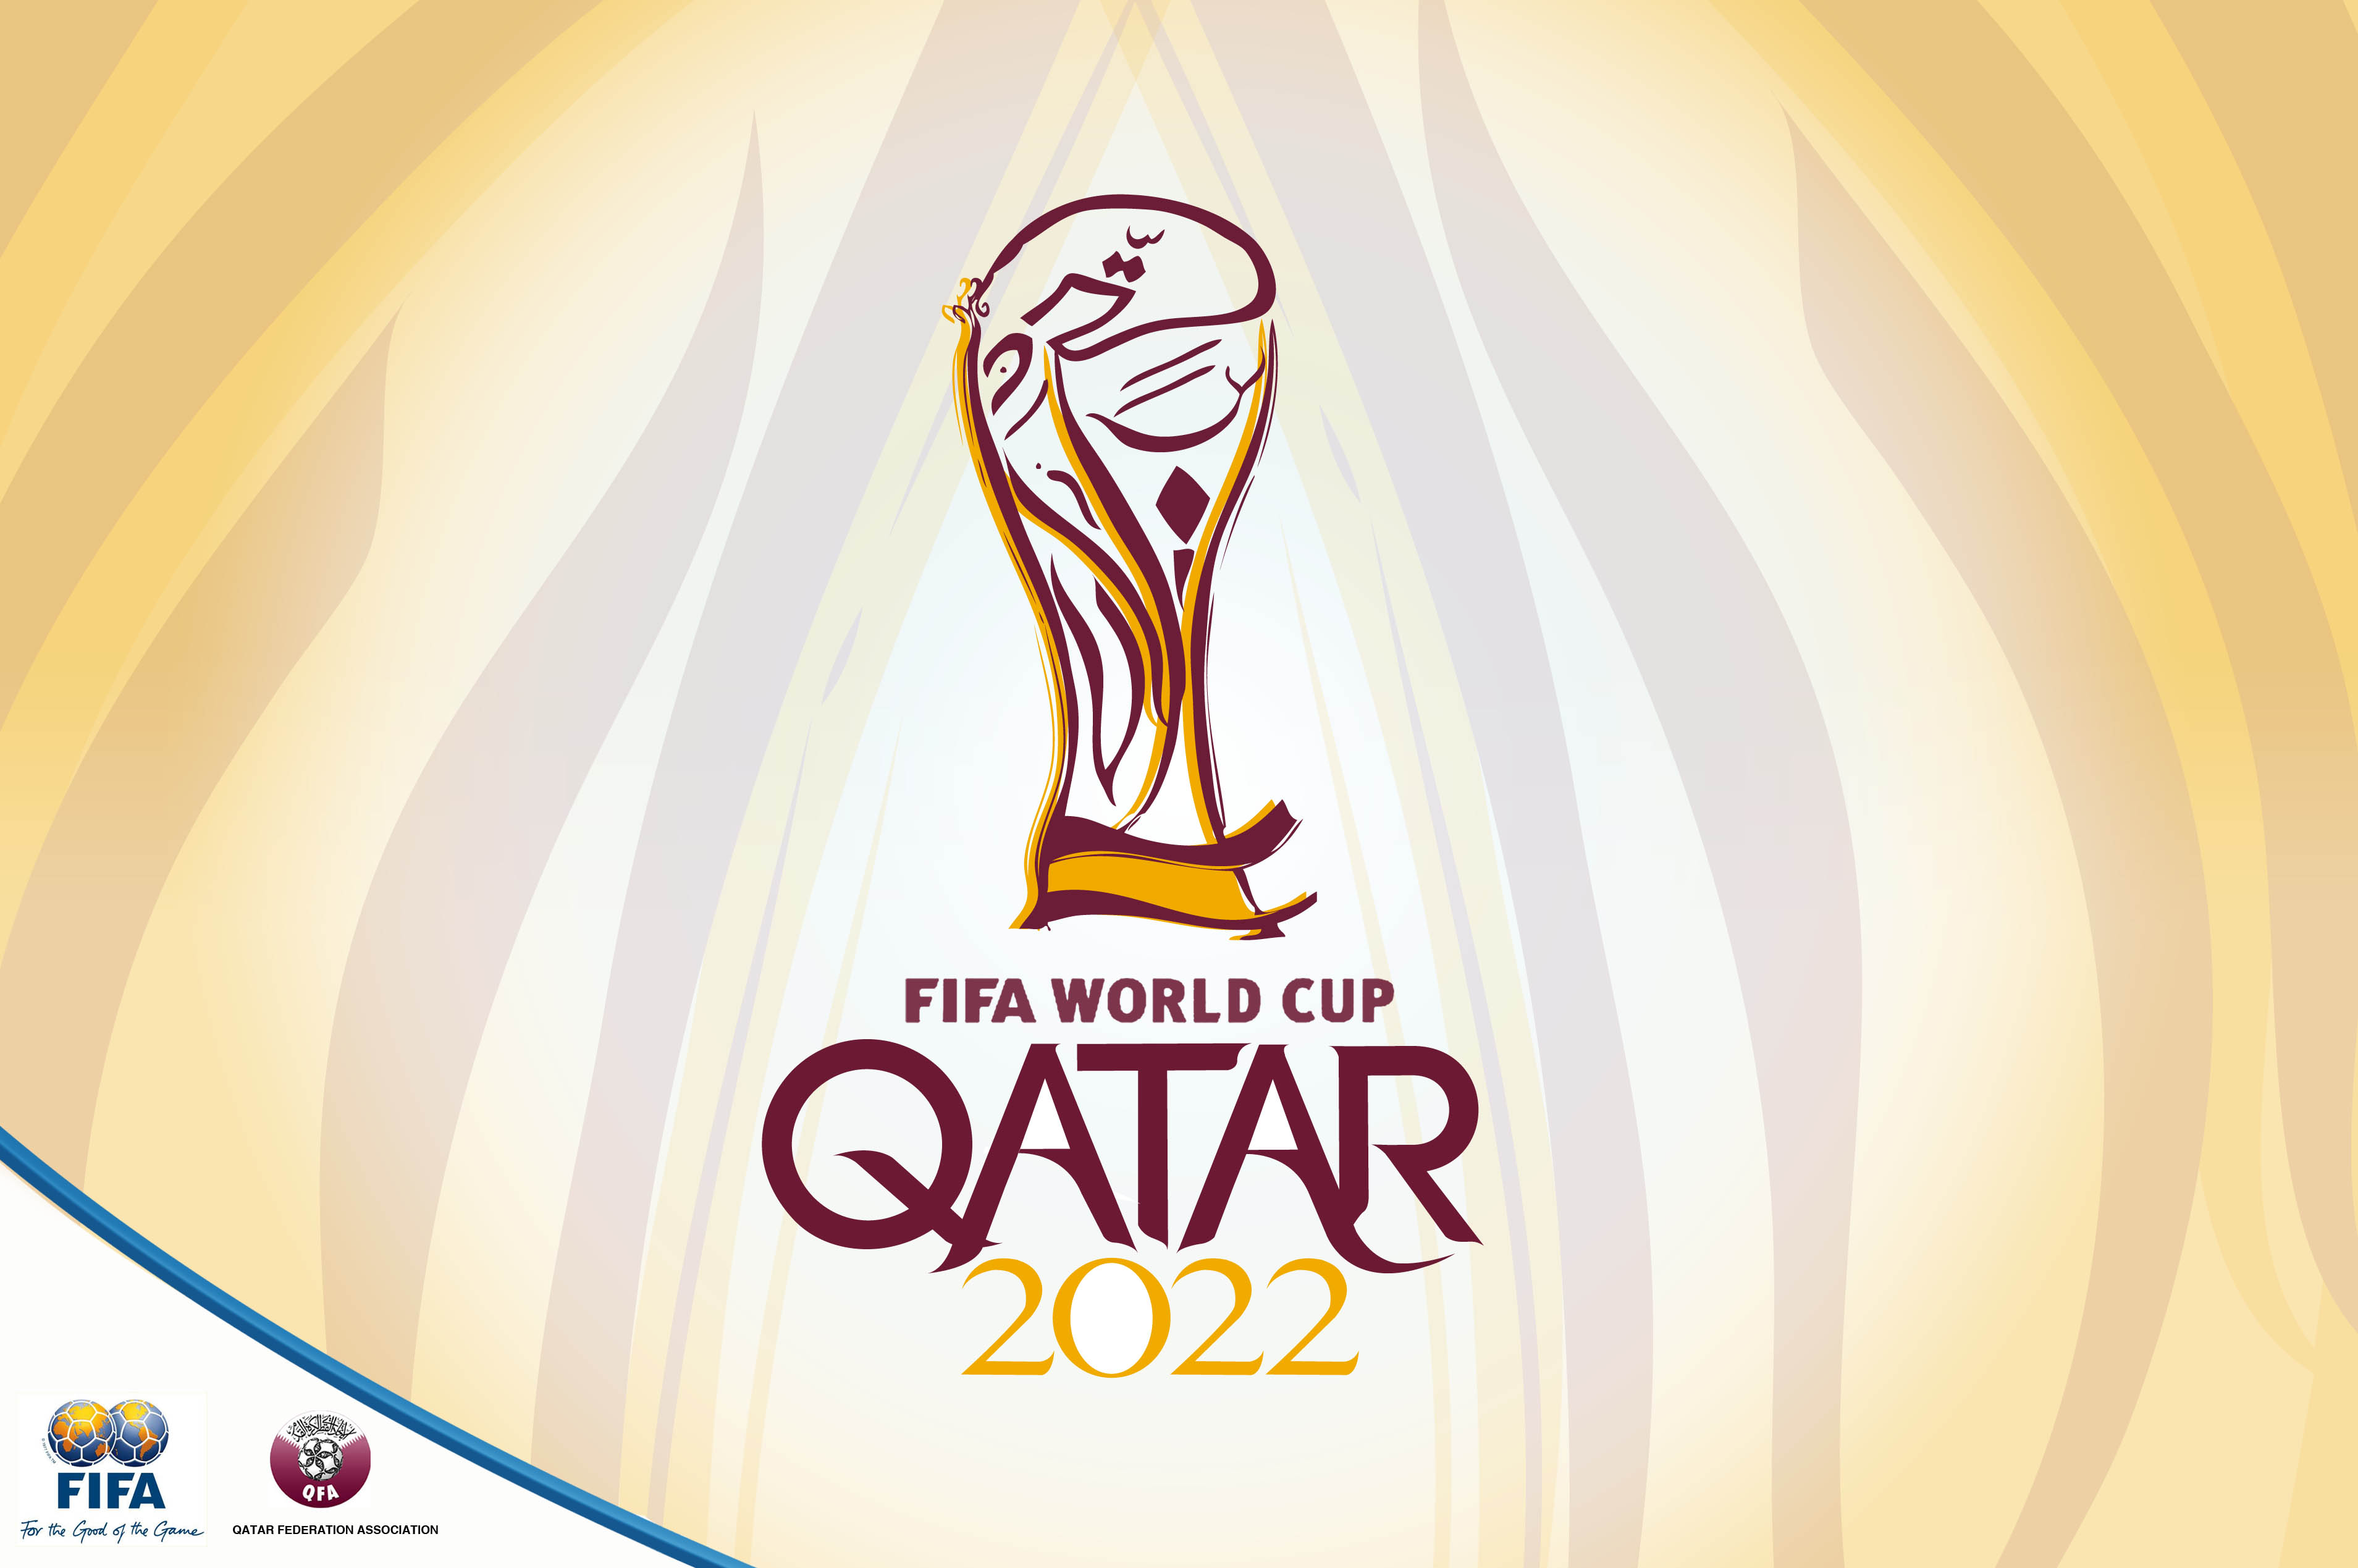 Concacaf elabora inédito sistema de clasificación para Qatar 2022